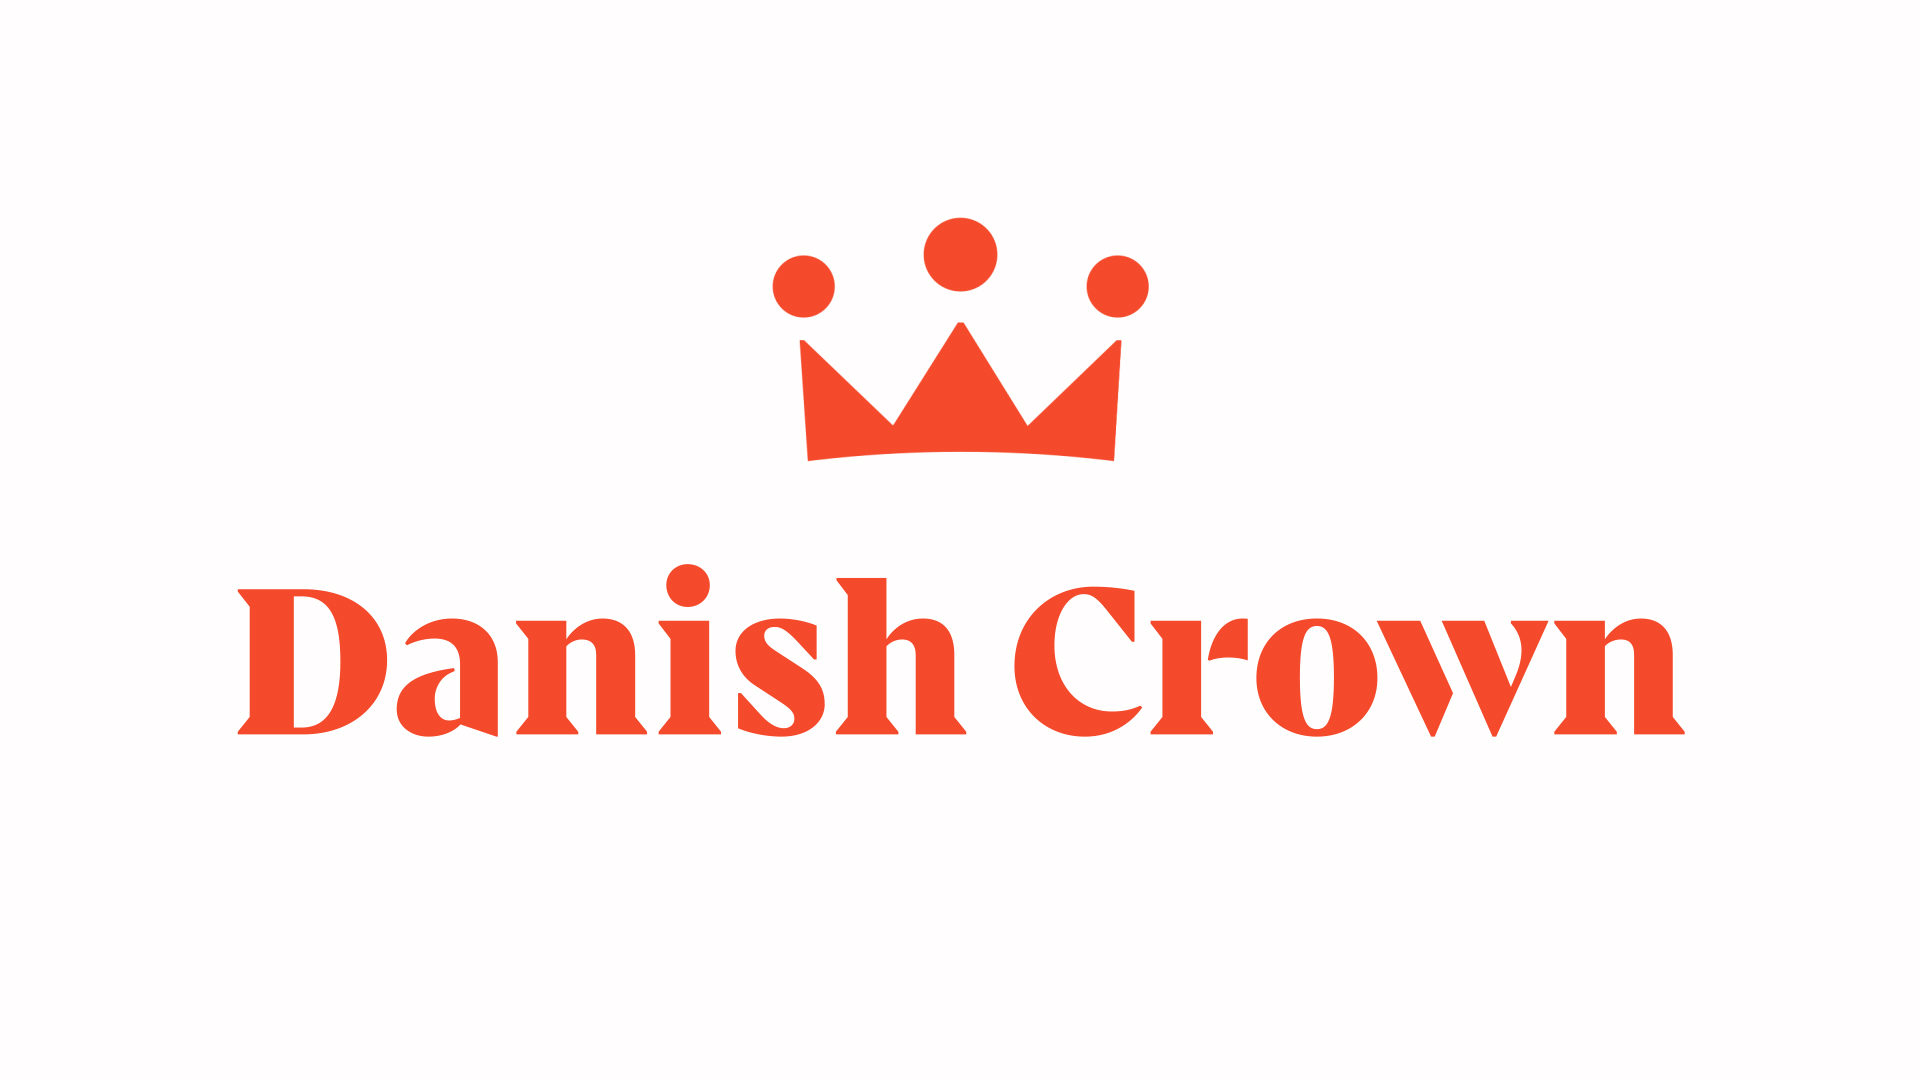 Crown logo in red and wordmark spelling Danish Crown